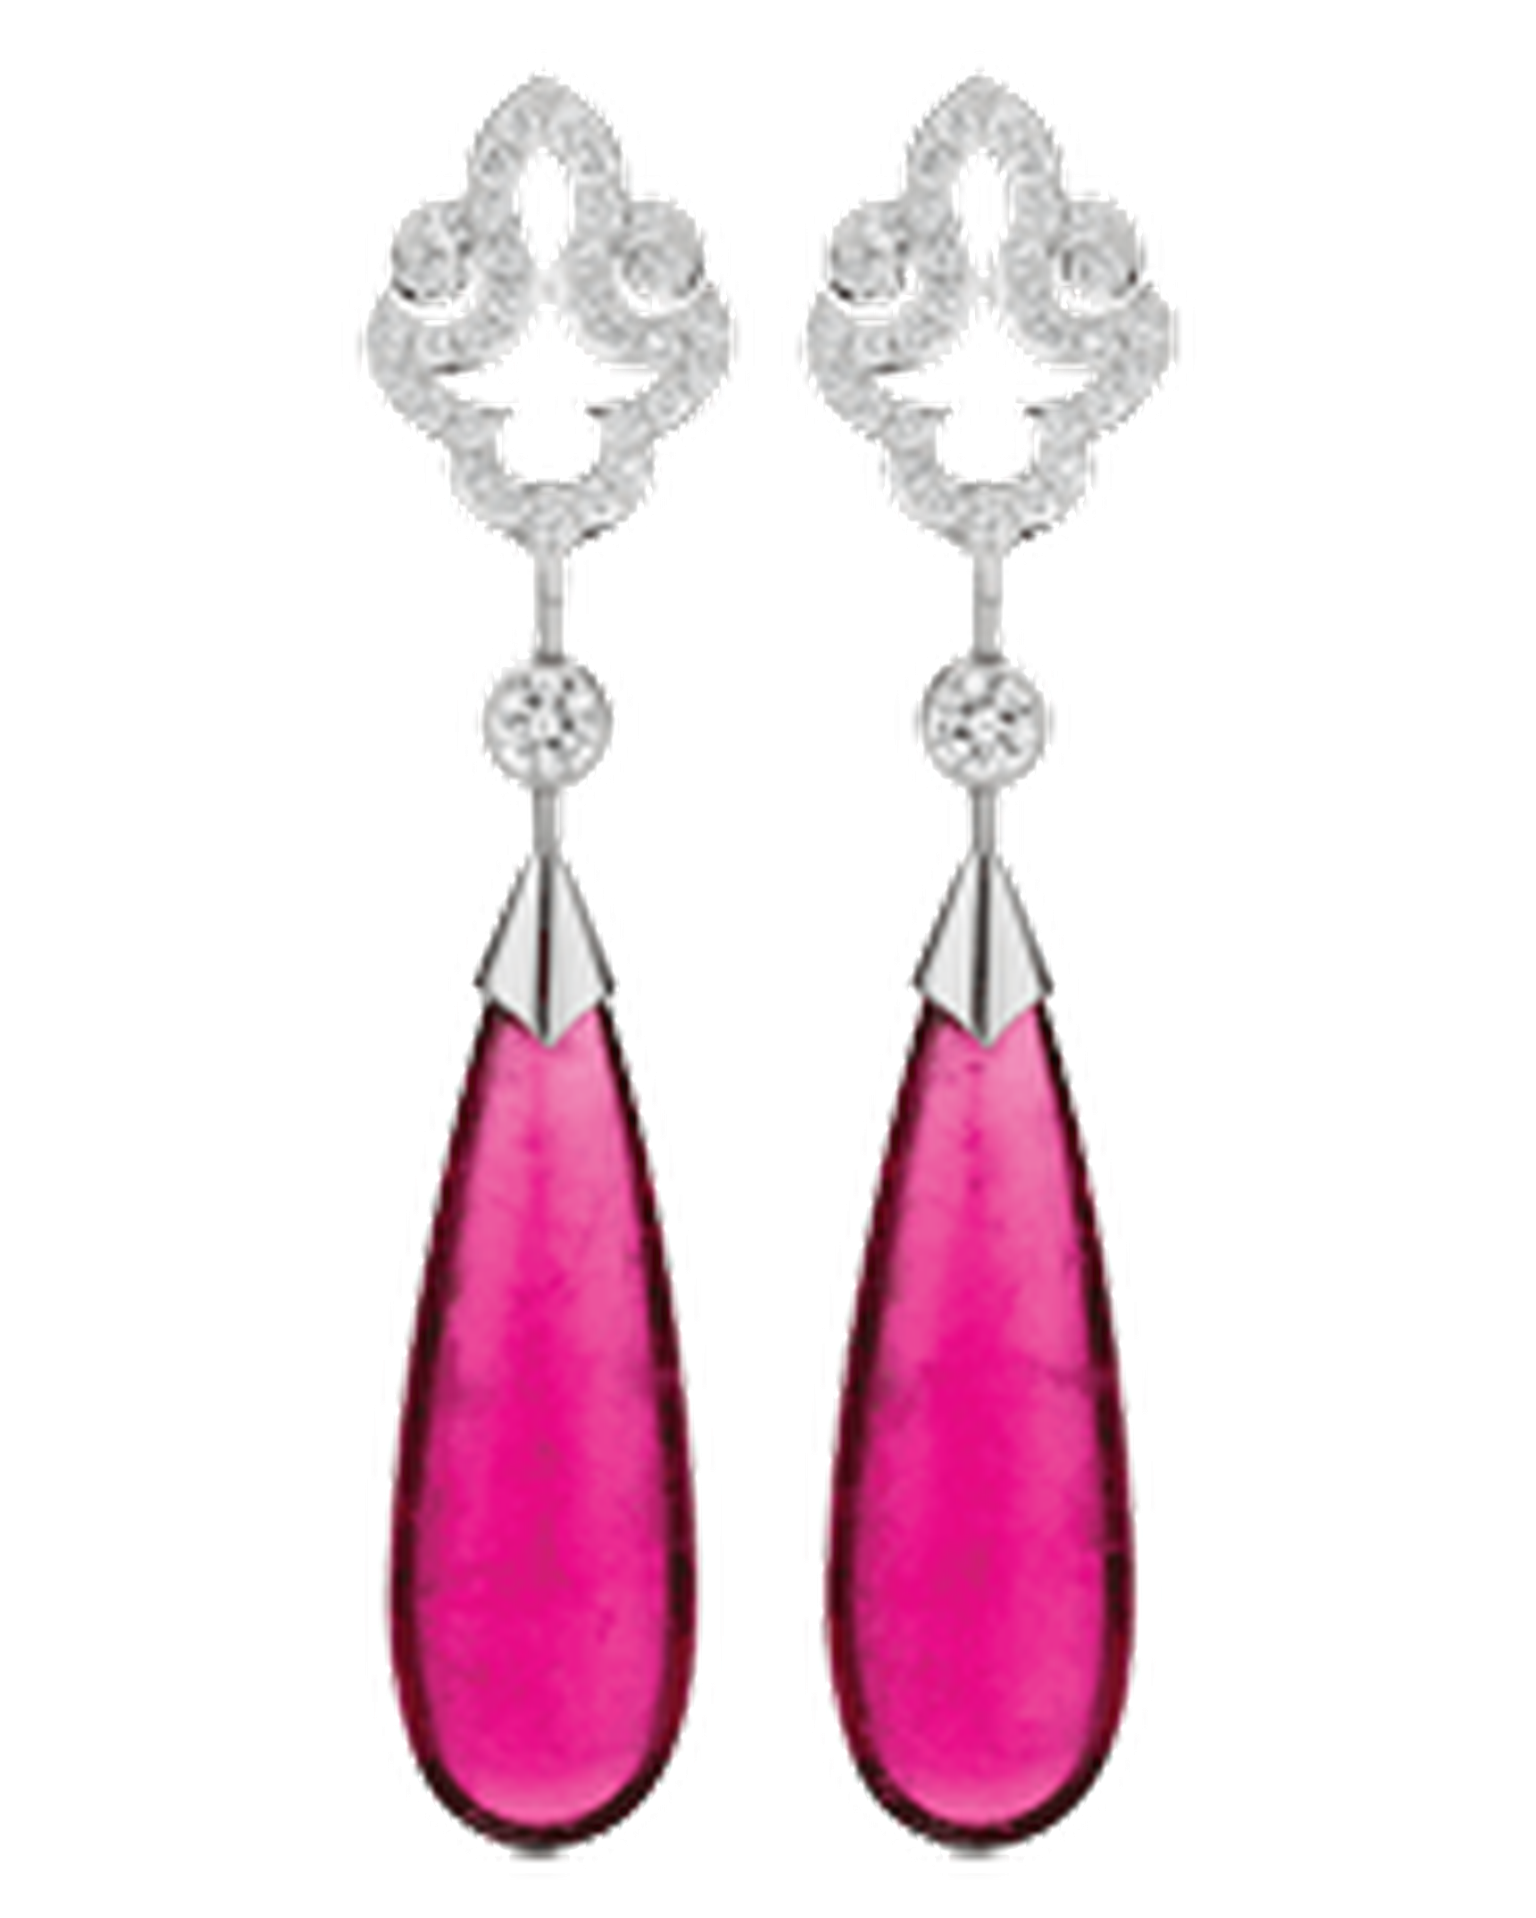 Calleija Maharaja rubbelite and diamond earrings_20140220_Thumbnail